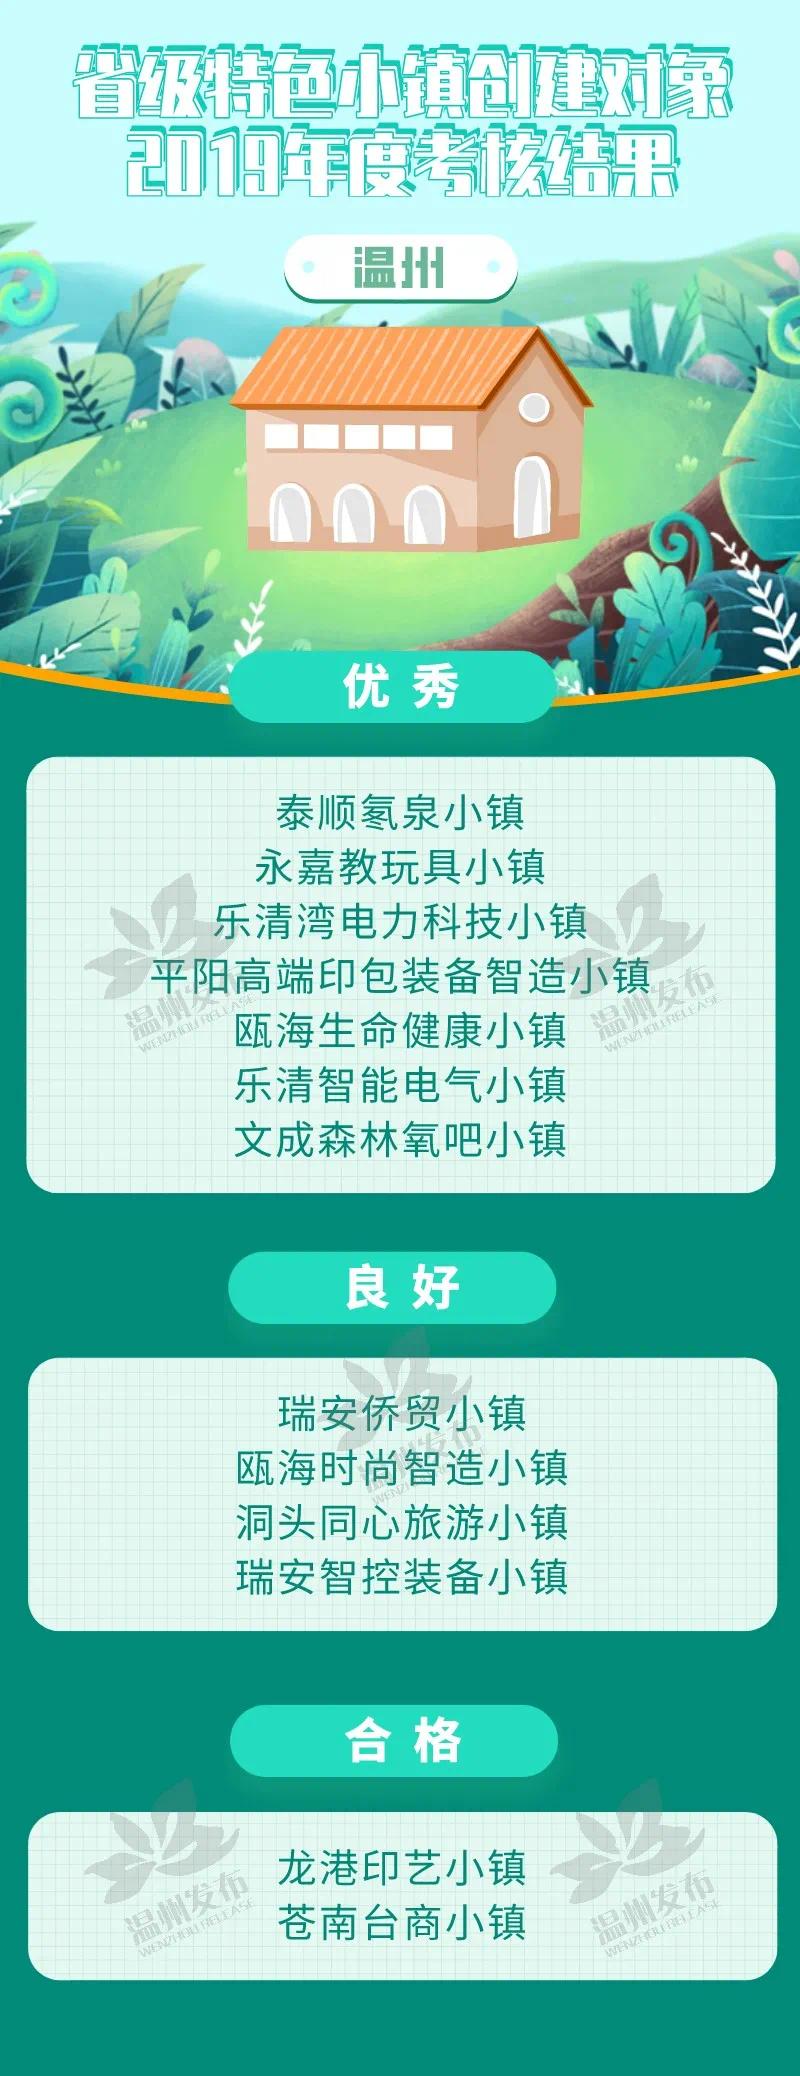 2019浙江省特色小镇考核 温州7个获优秀 位列全省第一